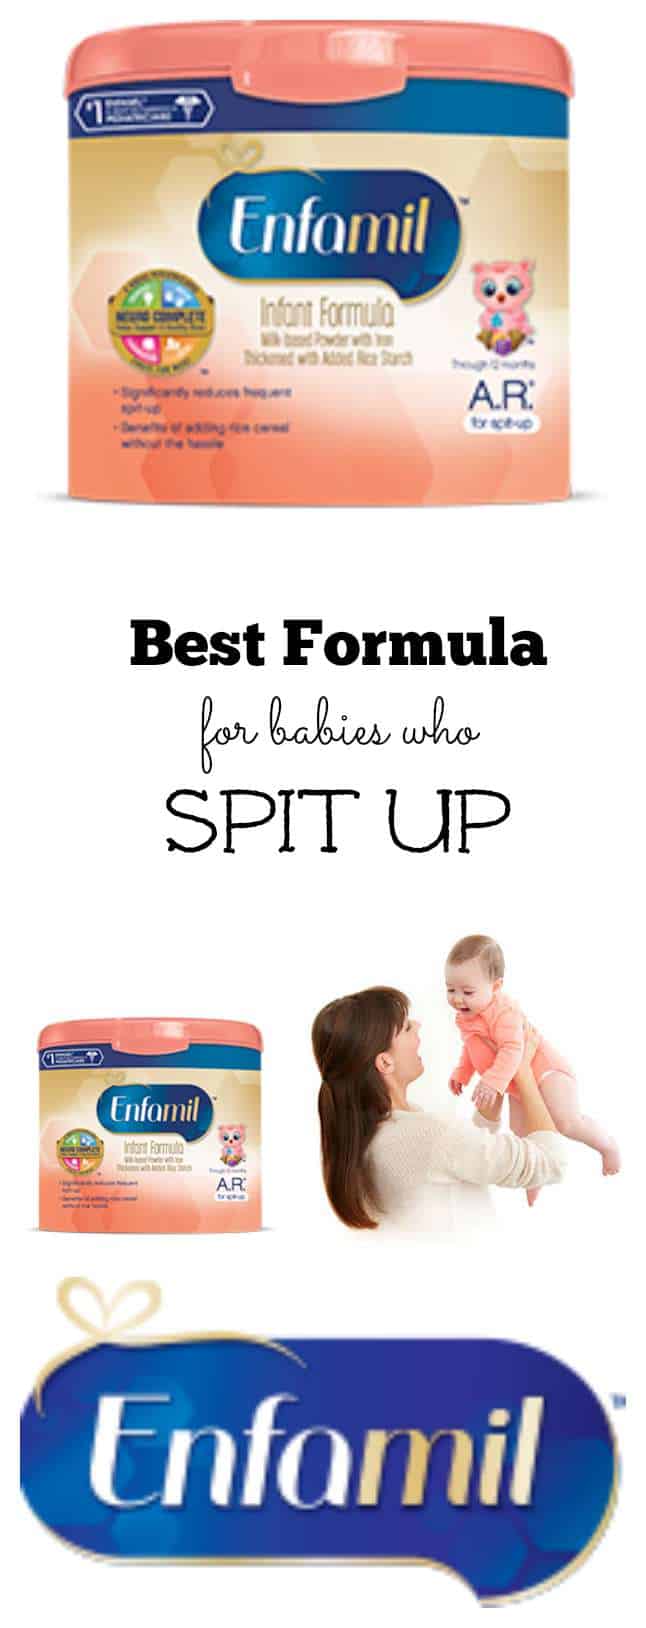 Best Formula for Babies who Spit Up